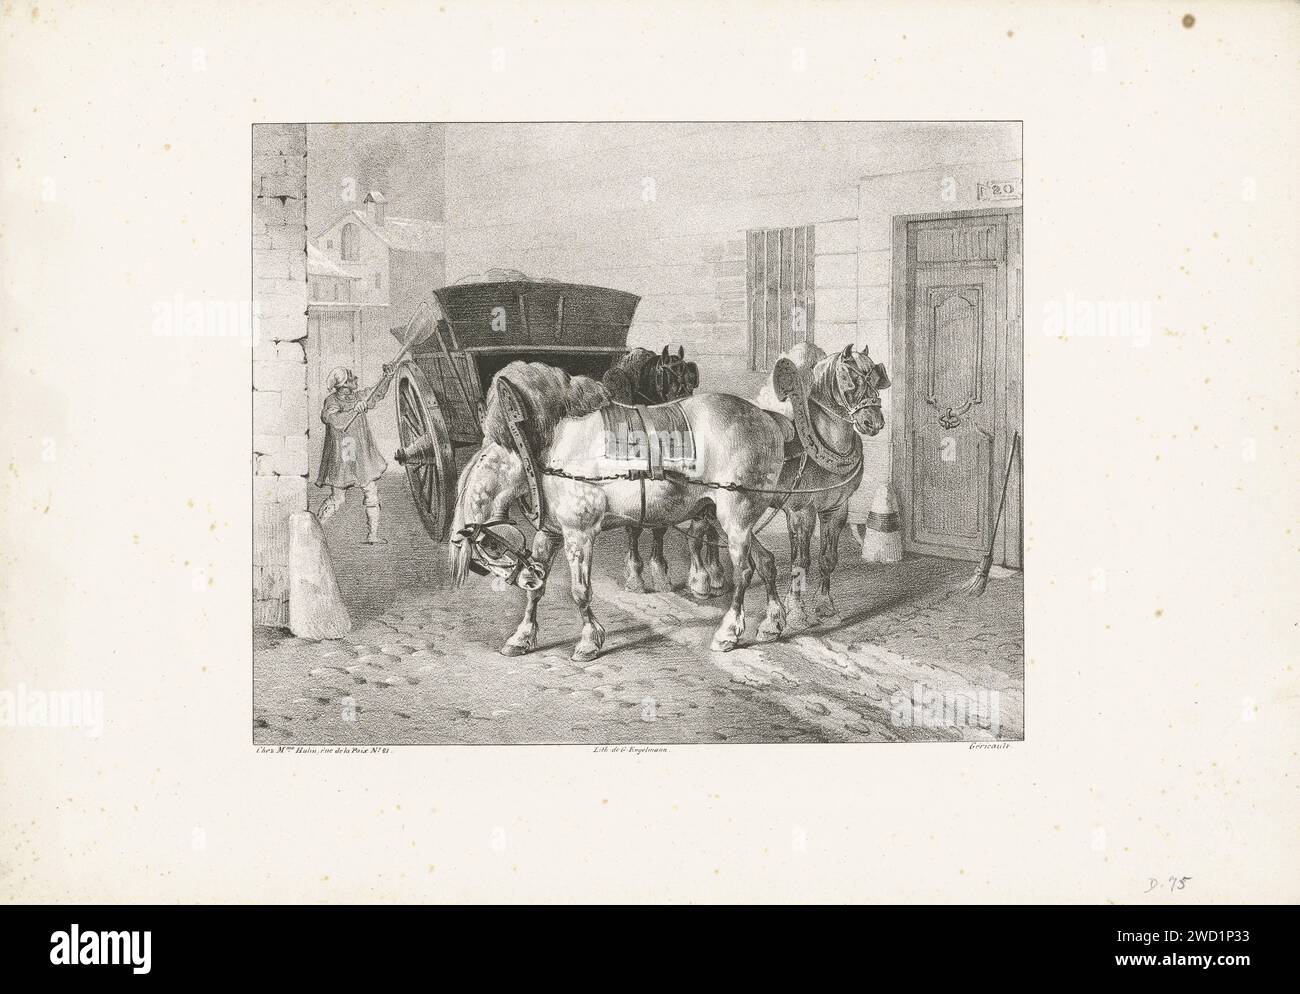 Stradeevy, Thovodore Seasonal, stampa 1823 Un uomo crea la spazzatura nella sua auto. Tre cavalli da tiro sono tesi per l'auto. Carta di Parigi che raccoglie le parti scartate. cavallo Foto Stock